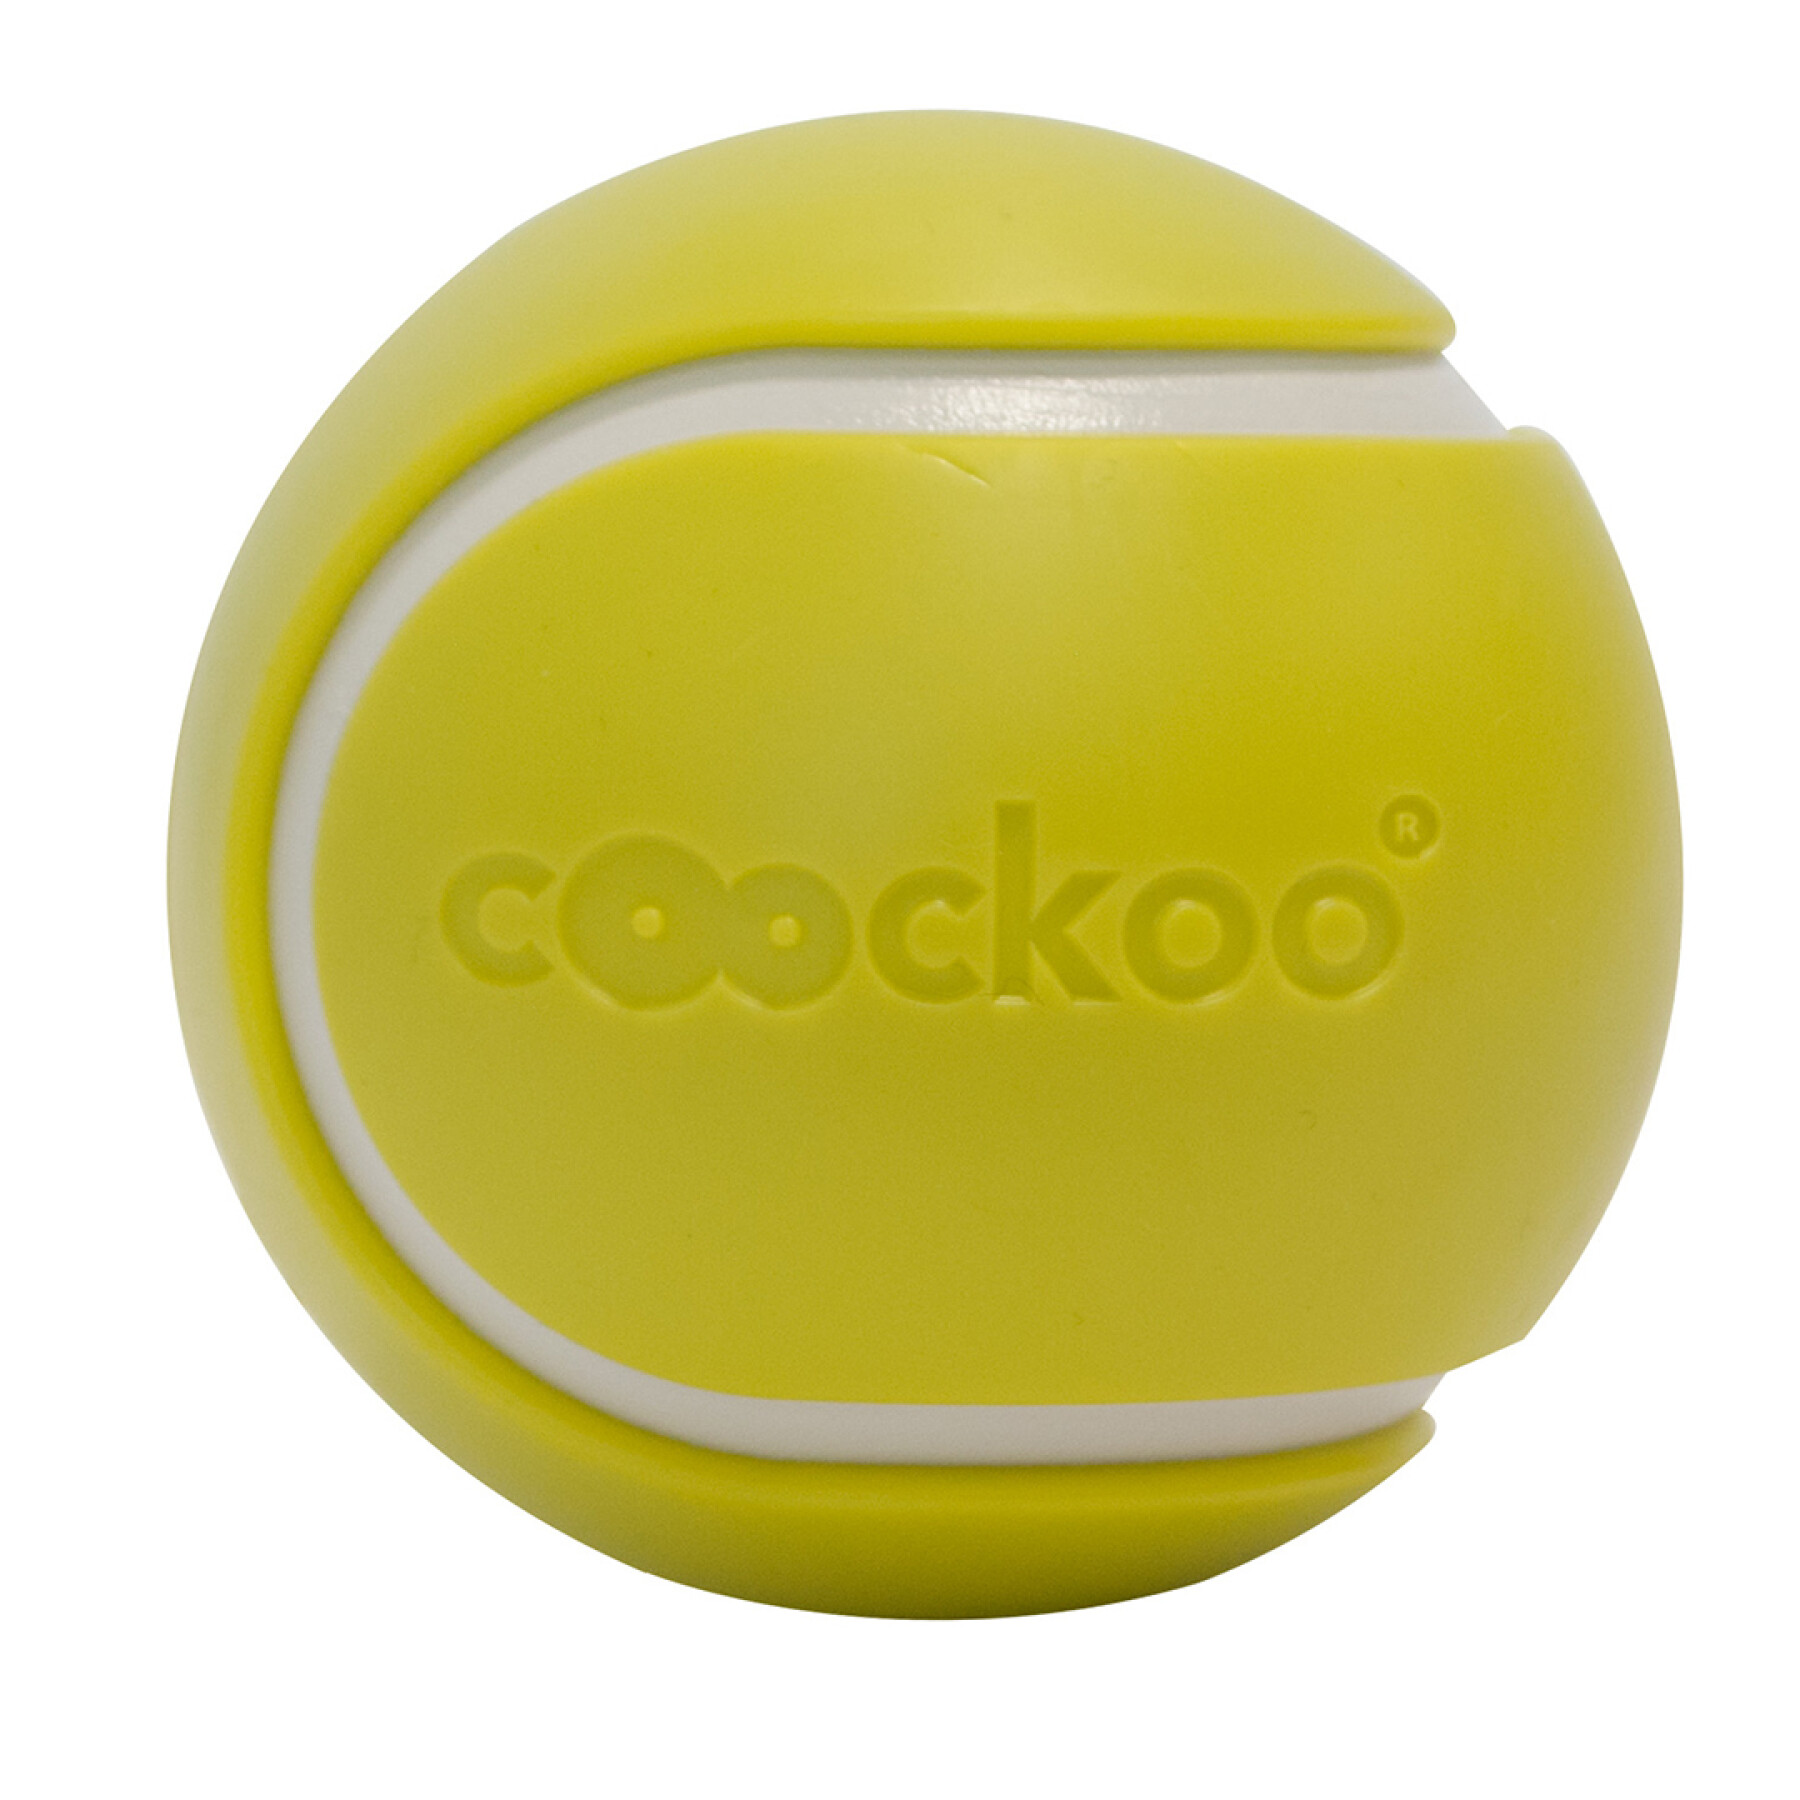 Dog ball Coockoo Magic